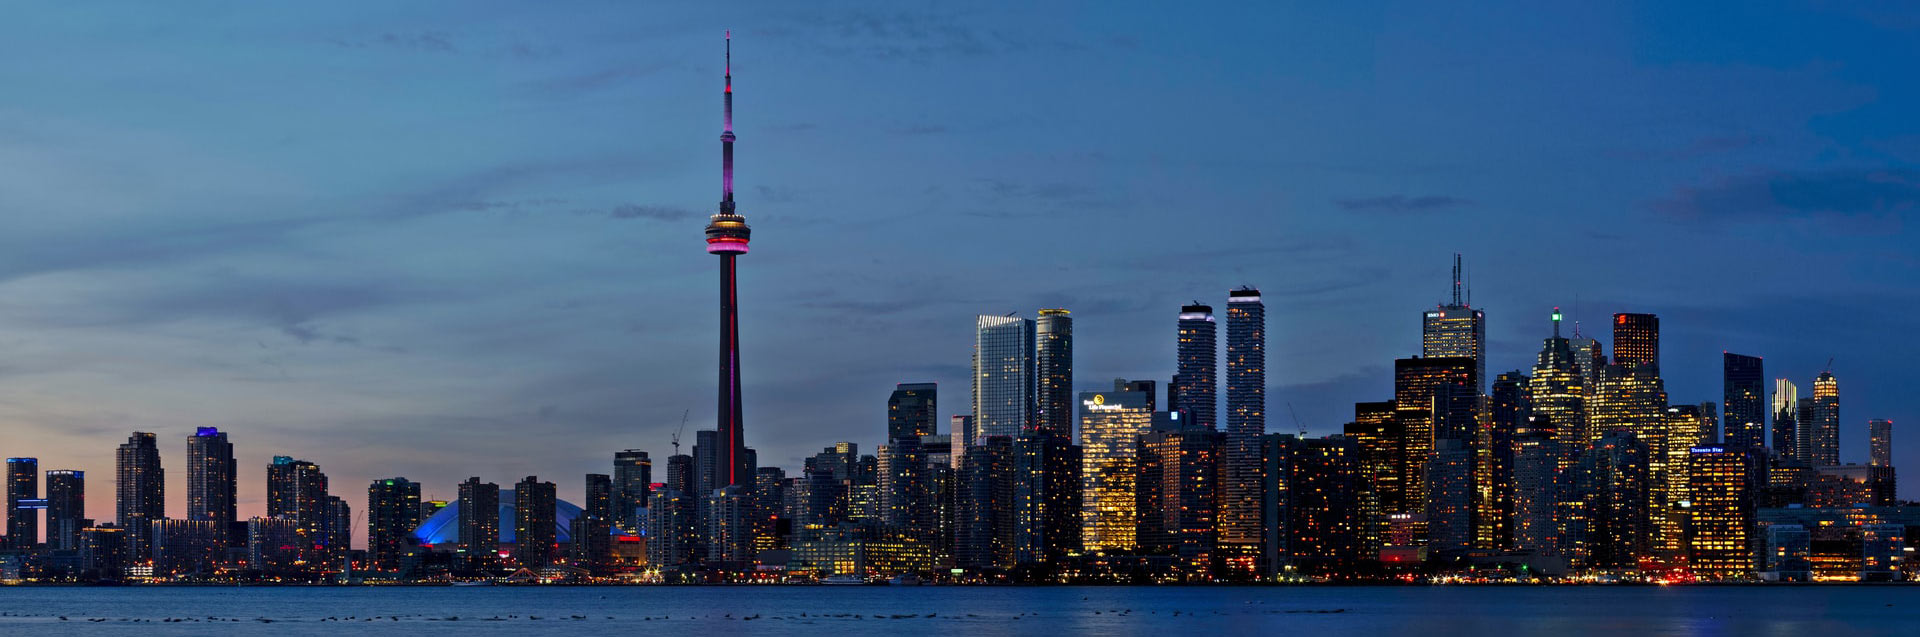 Malam Skyline Toronto